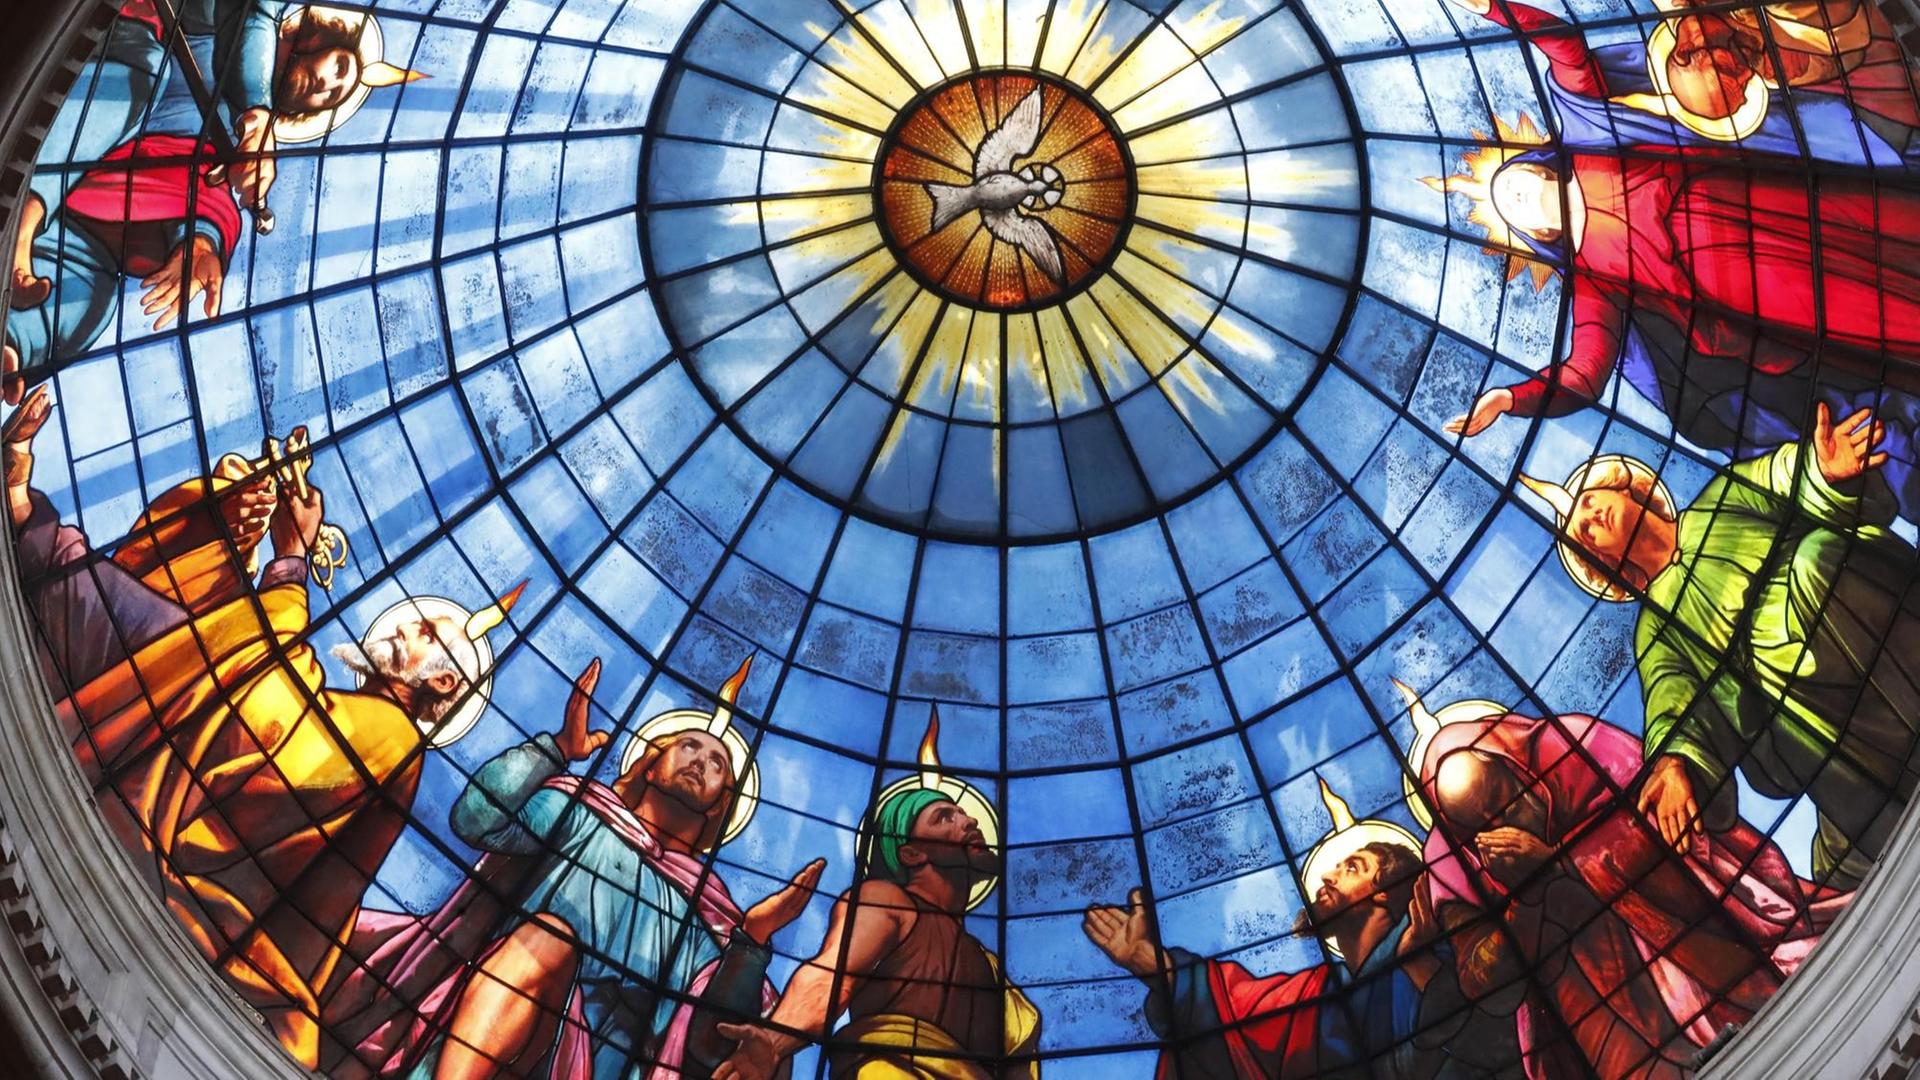 Buntglasfenster, dass das Pfingstgeschehen mit dem Heiligen Geist in Form einer Taube zeigt.